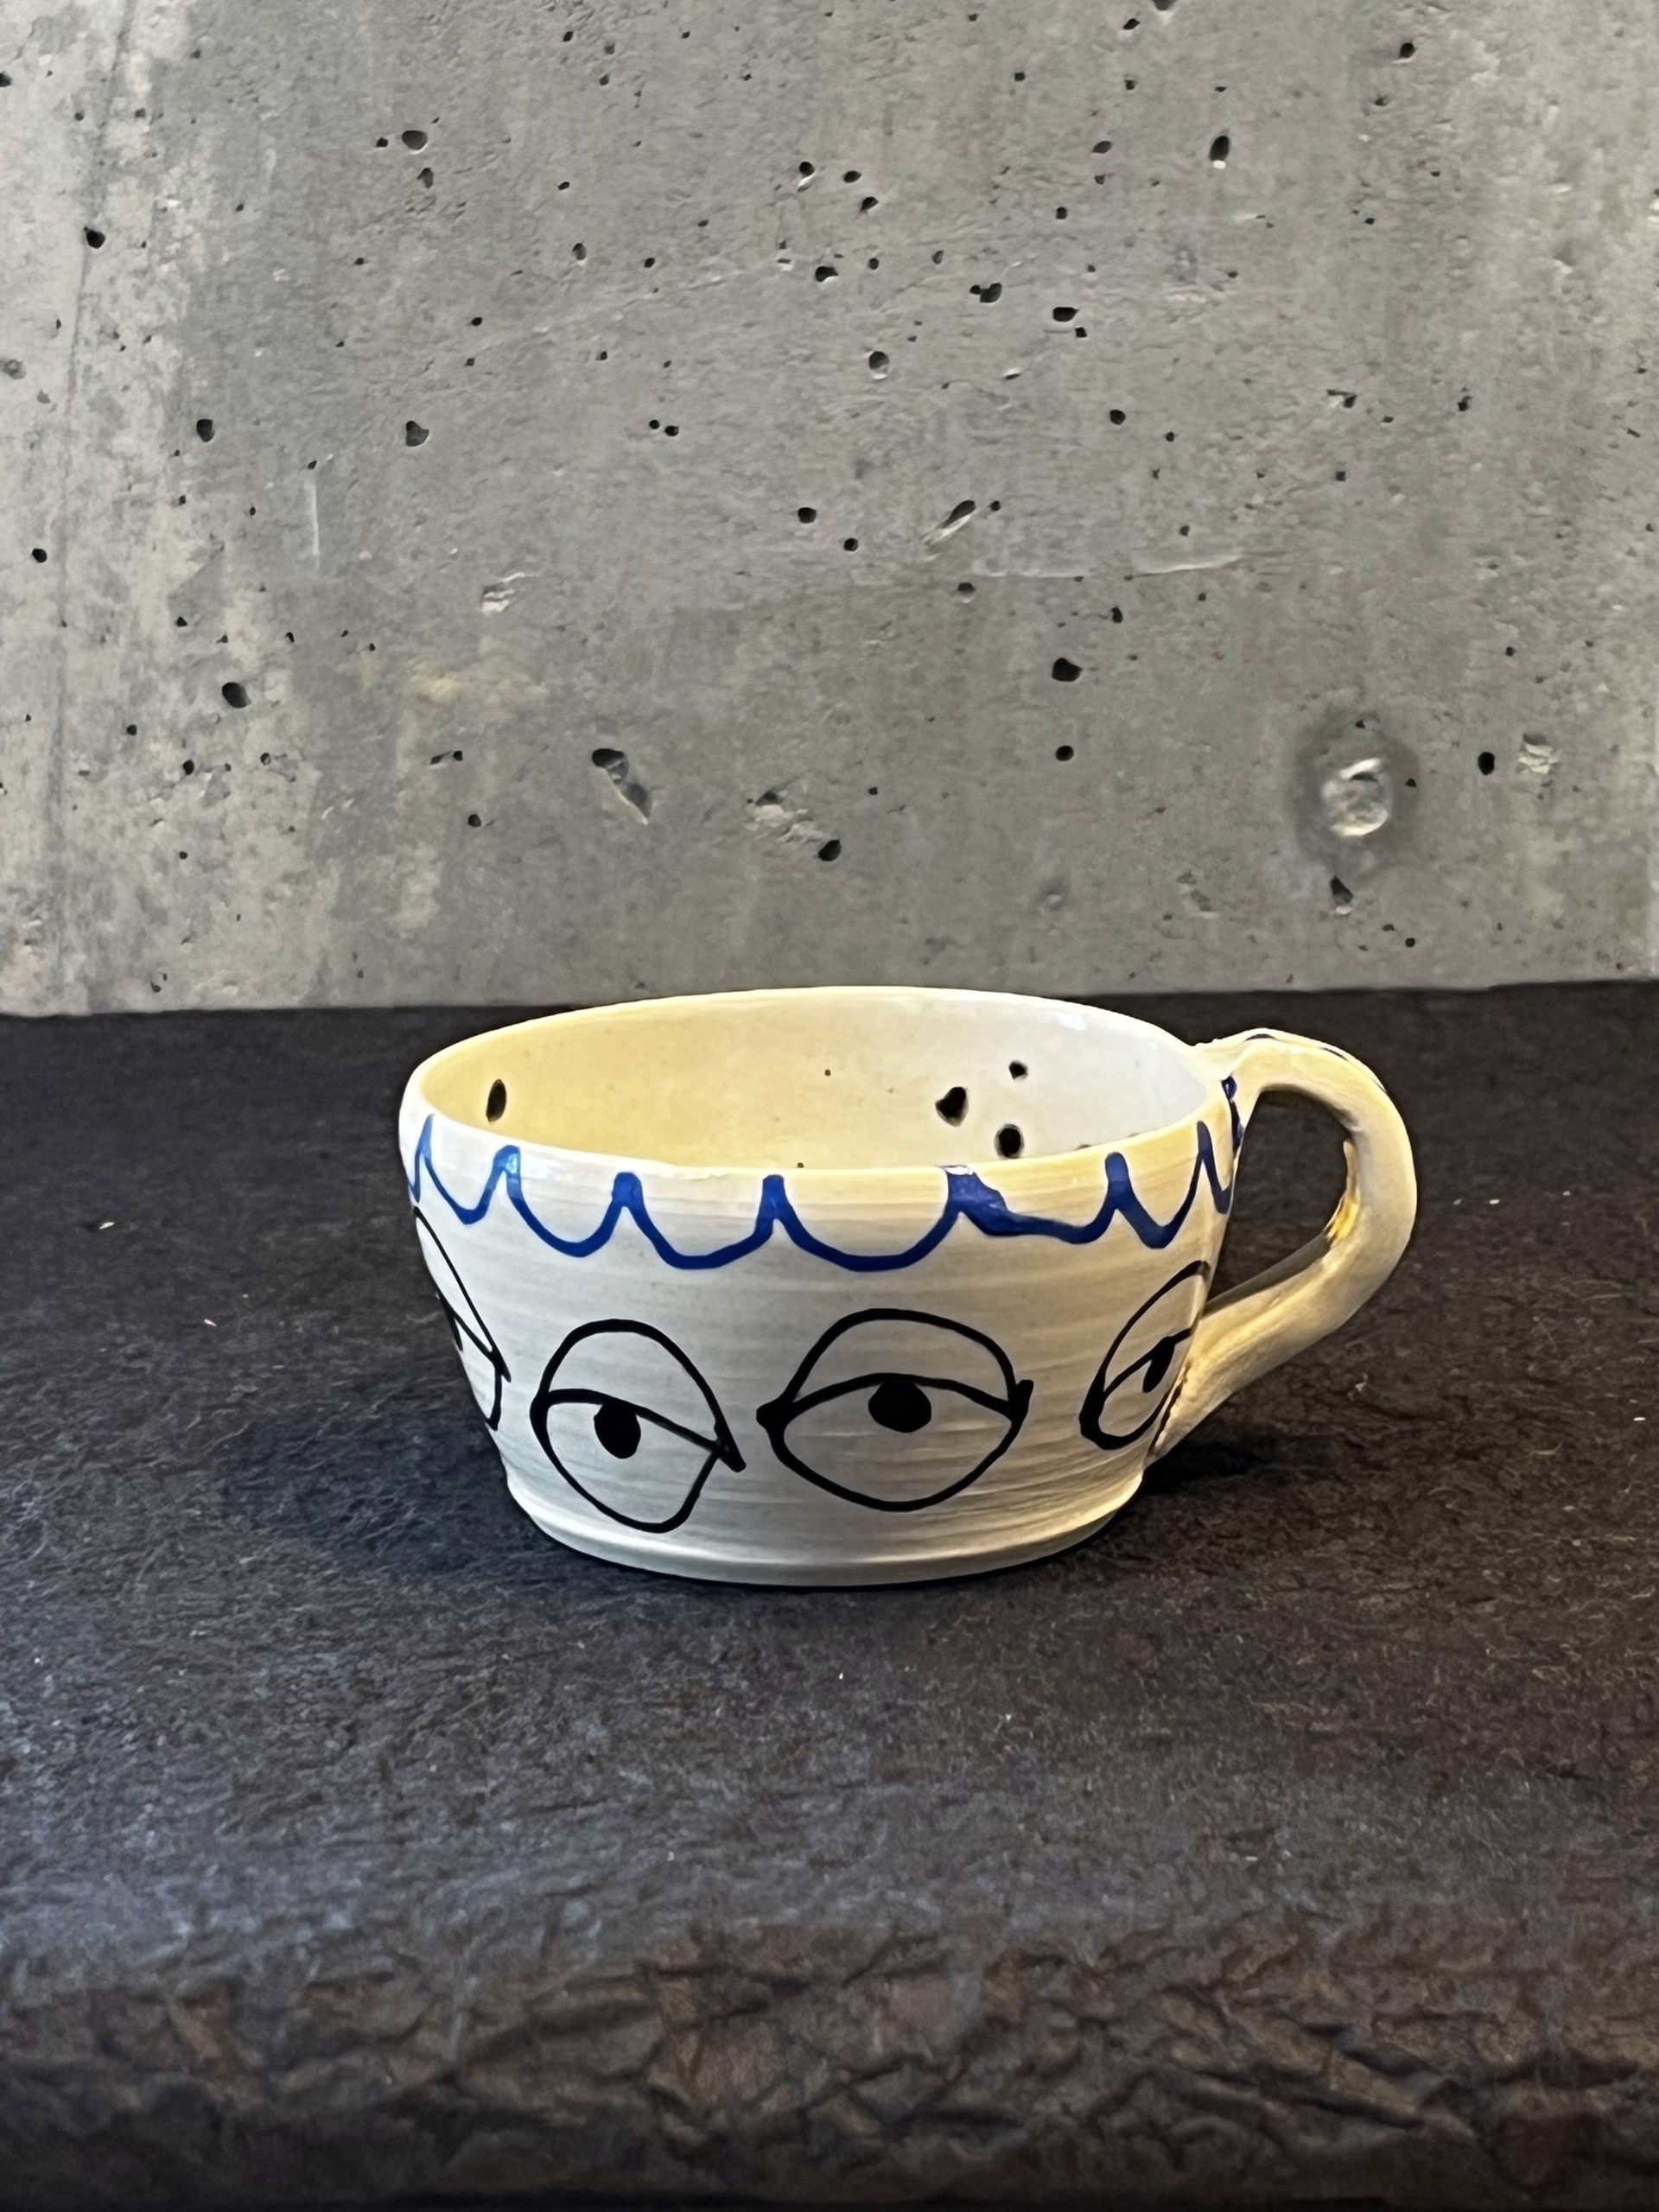 Mini Mug 2 by Sarah Hummel Jones